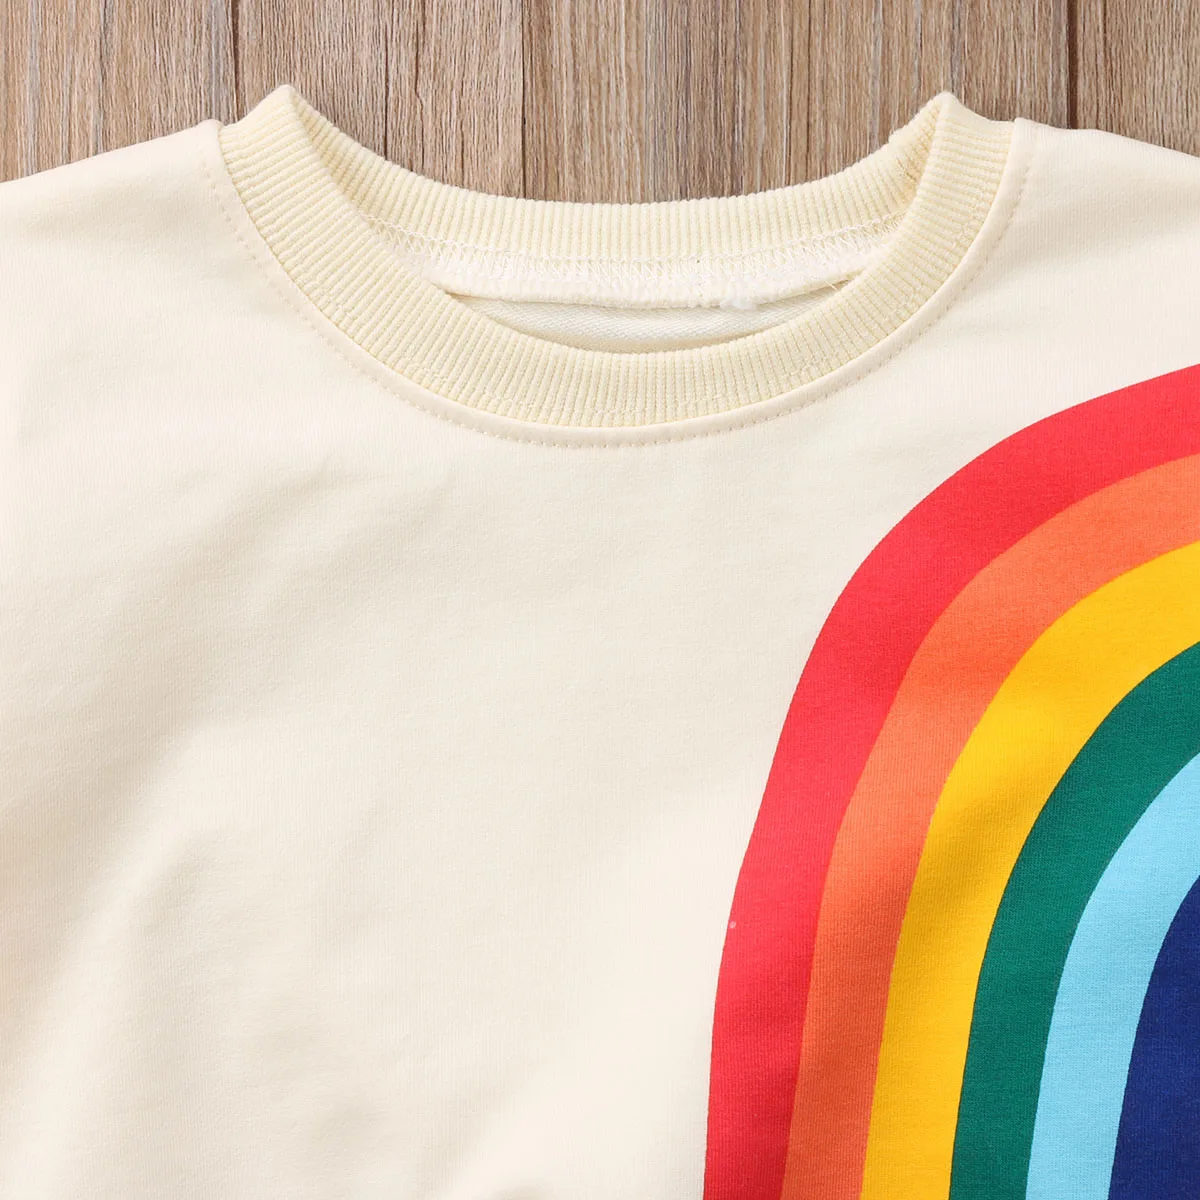 Детская футболка радужной расцветки для маленьких девочек свитер кардиган